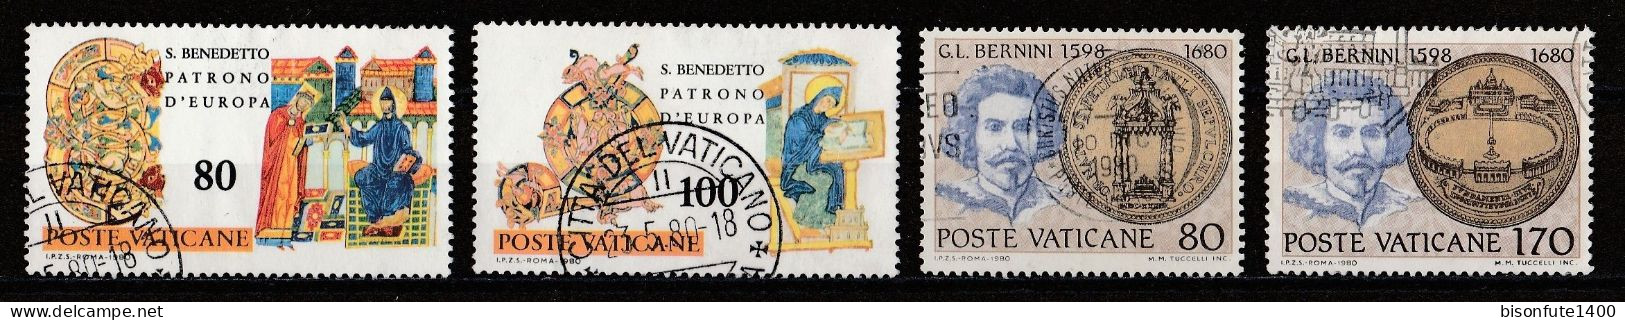 Vatican 1980 : Timbres Yvert & Tellier N° 689 - 690 - 694 - 695 - 696 - 698 - 699 - 700 Et 701 Oblitérés. - Oblitérés